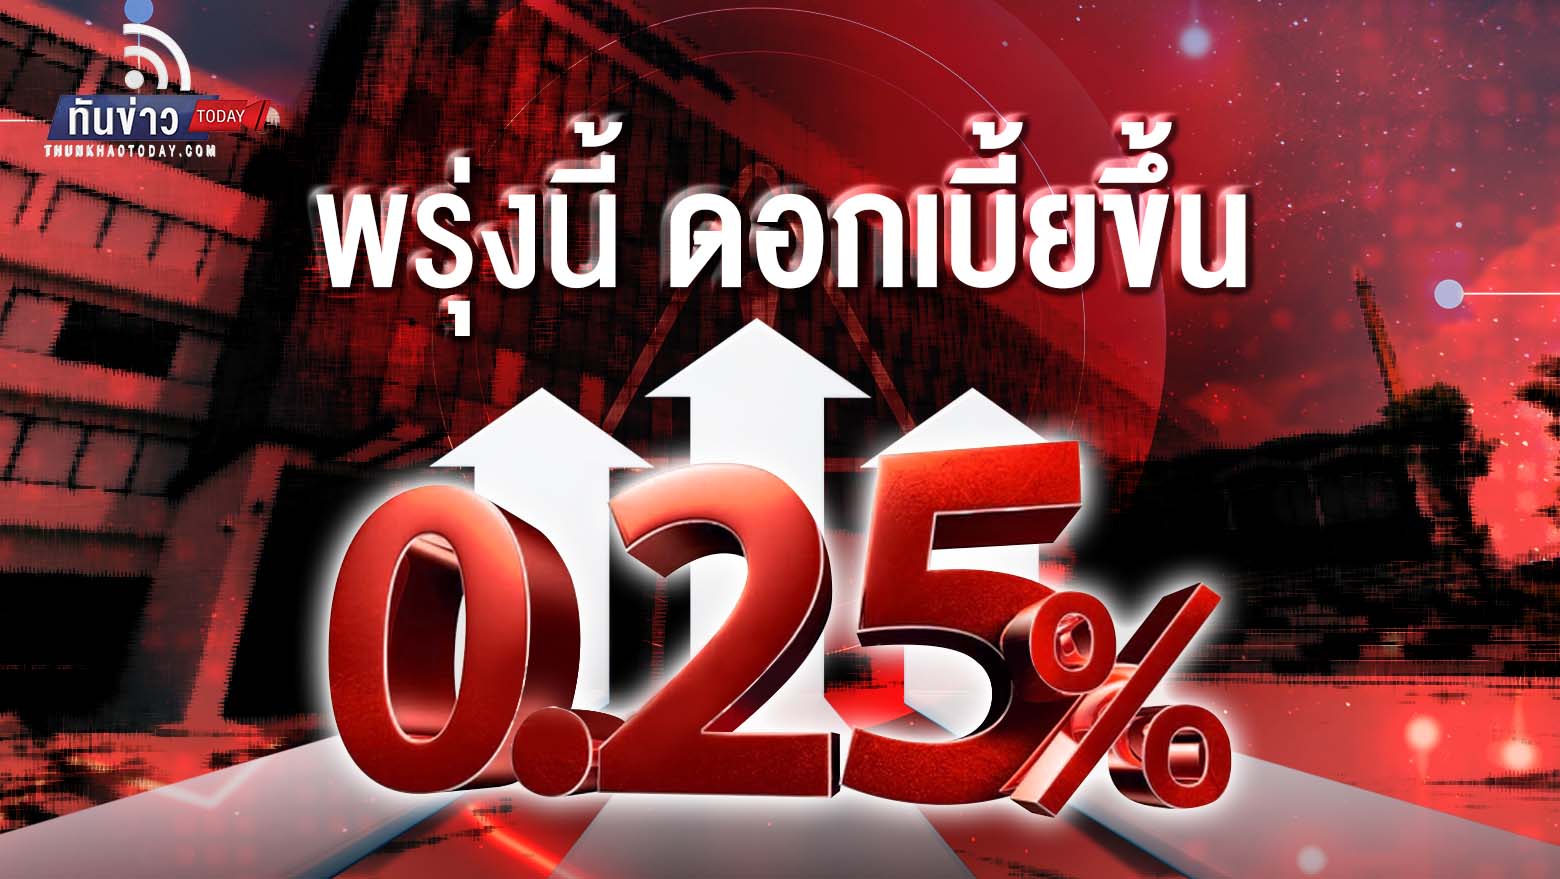 “ตลาดคาดไทยปรับขึ้นดอกเบี้ย 0.25% วันพรุ่งนี้ ประเดิมนัดแรกปี 66